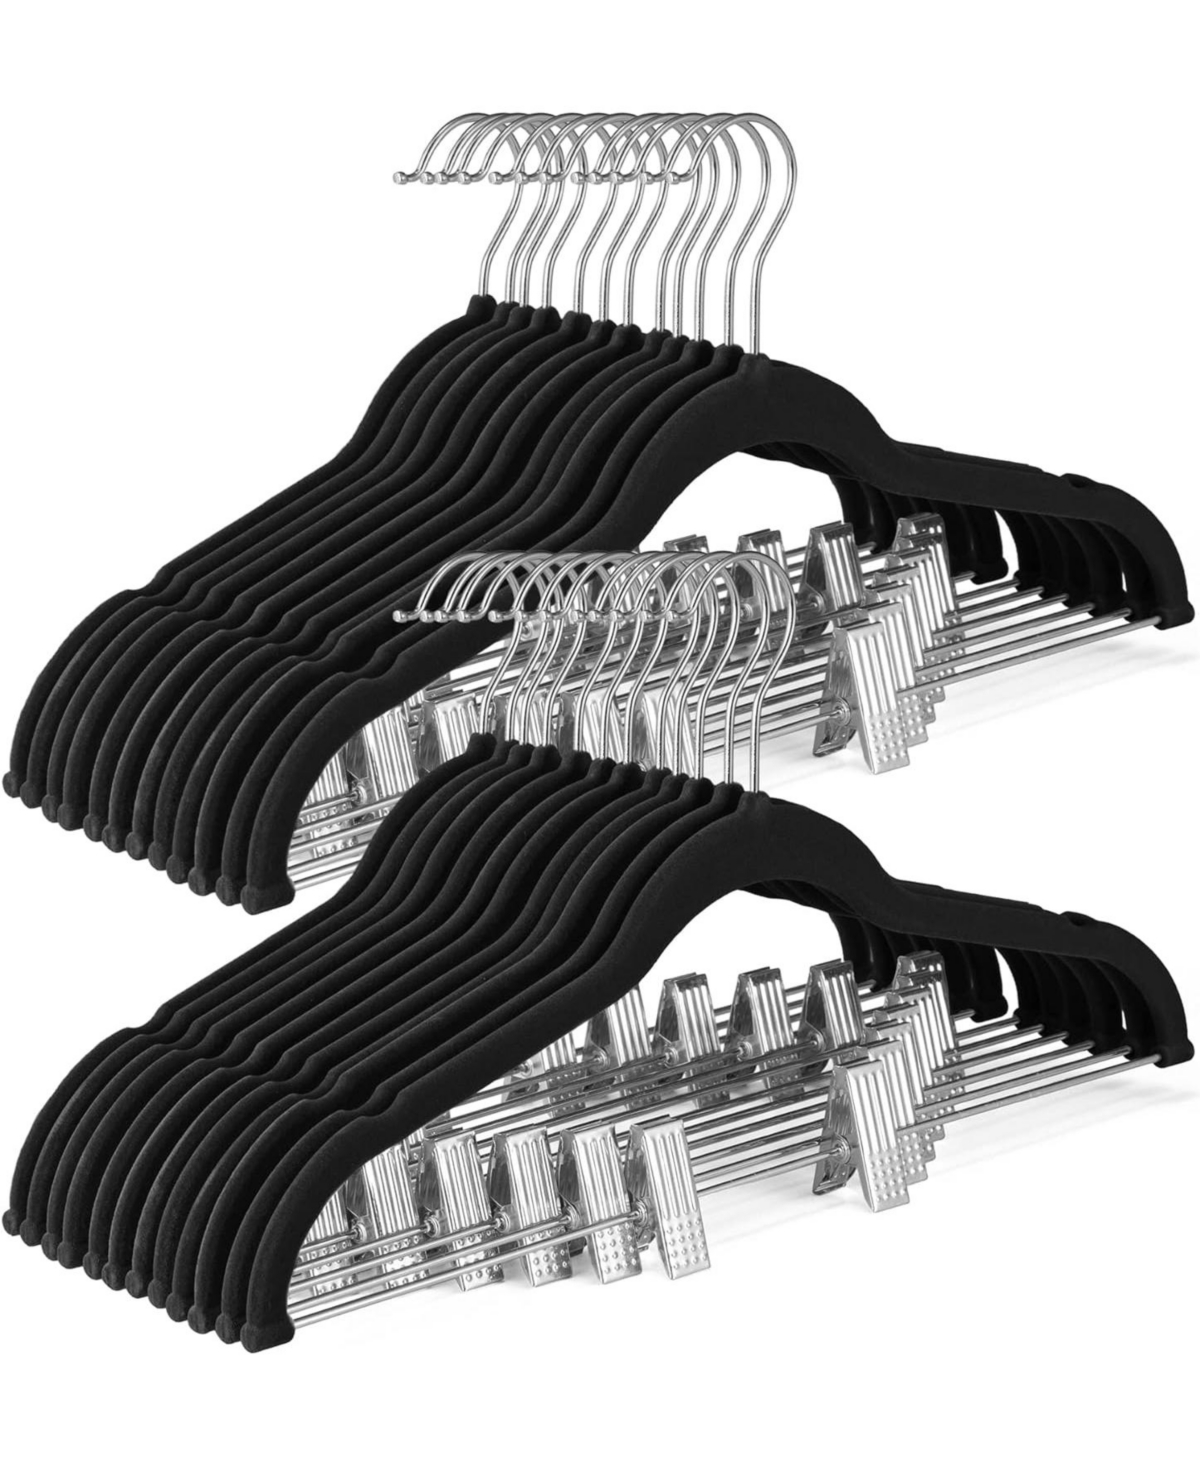 Velvet Skirt Hangers 24 Pack, Black Velvet Hangers with Adjustable Clips - Black